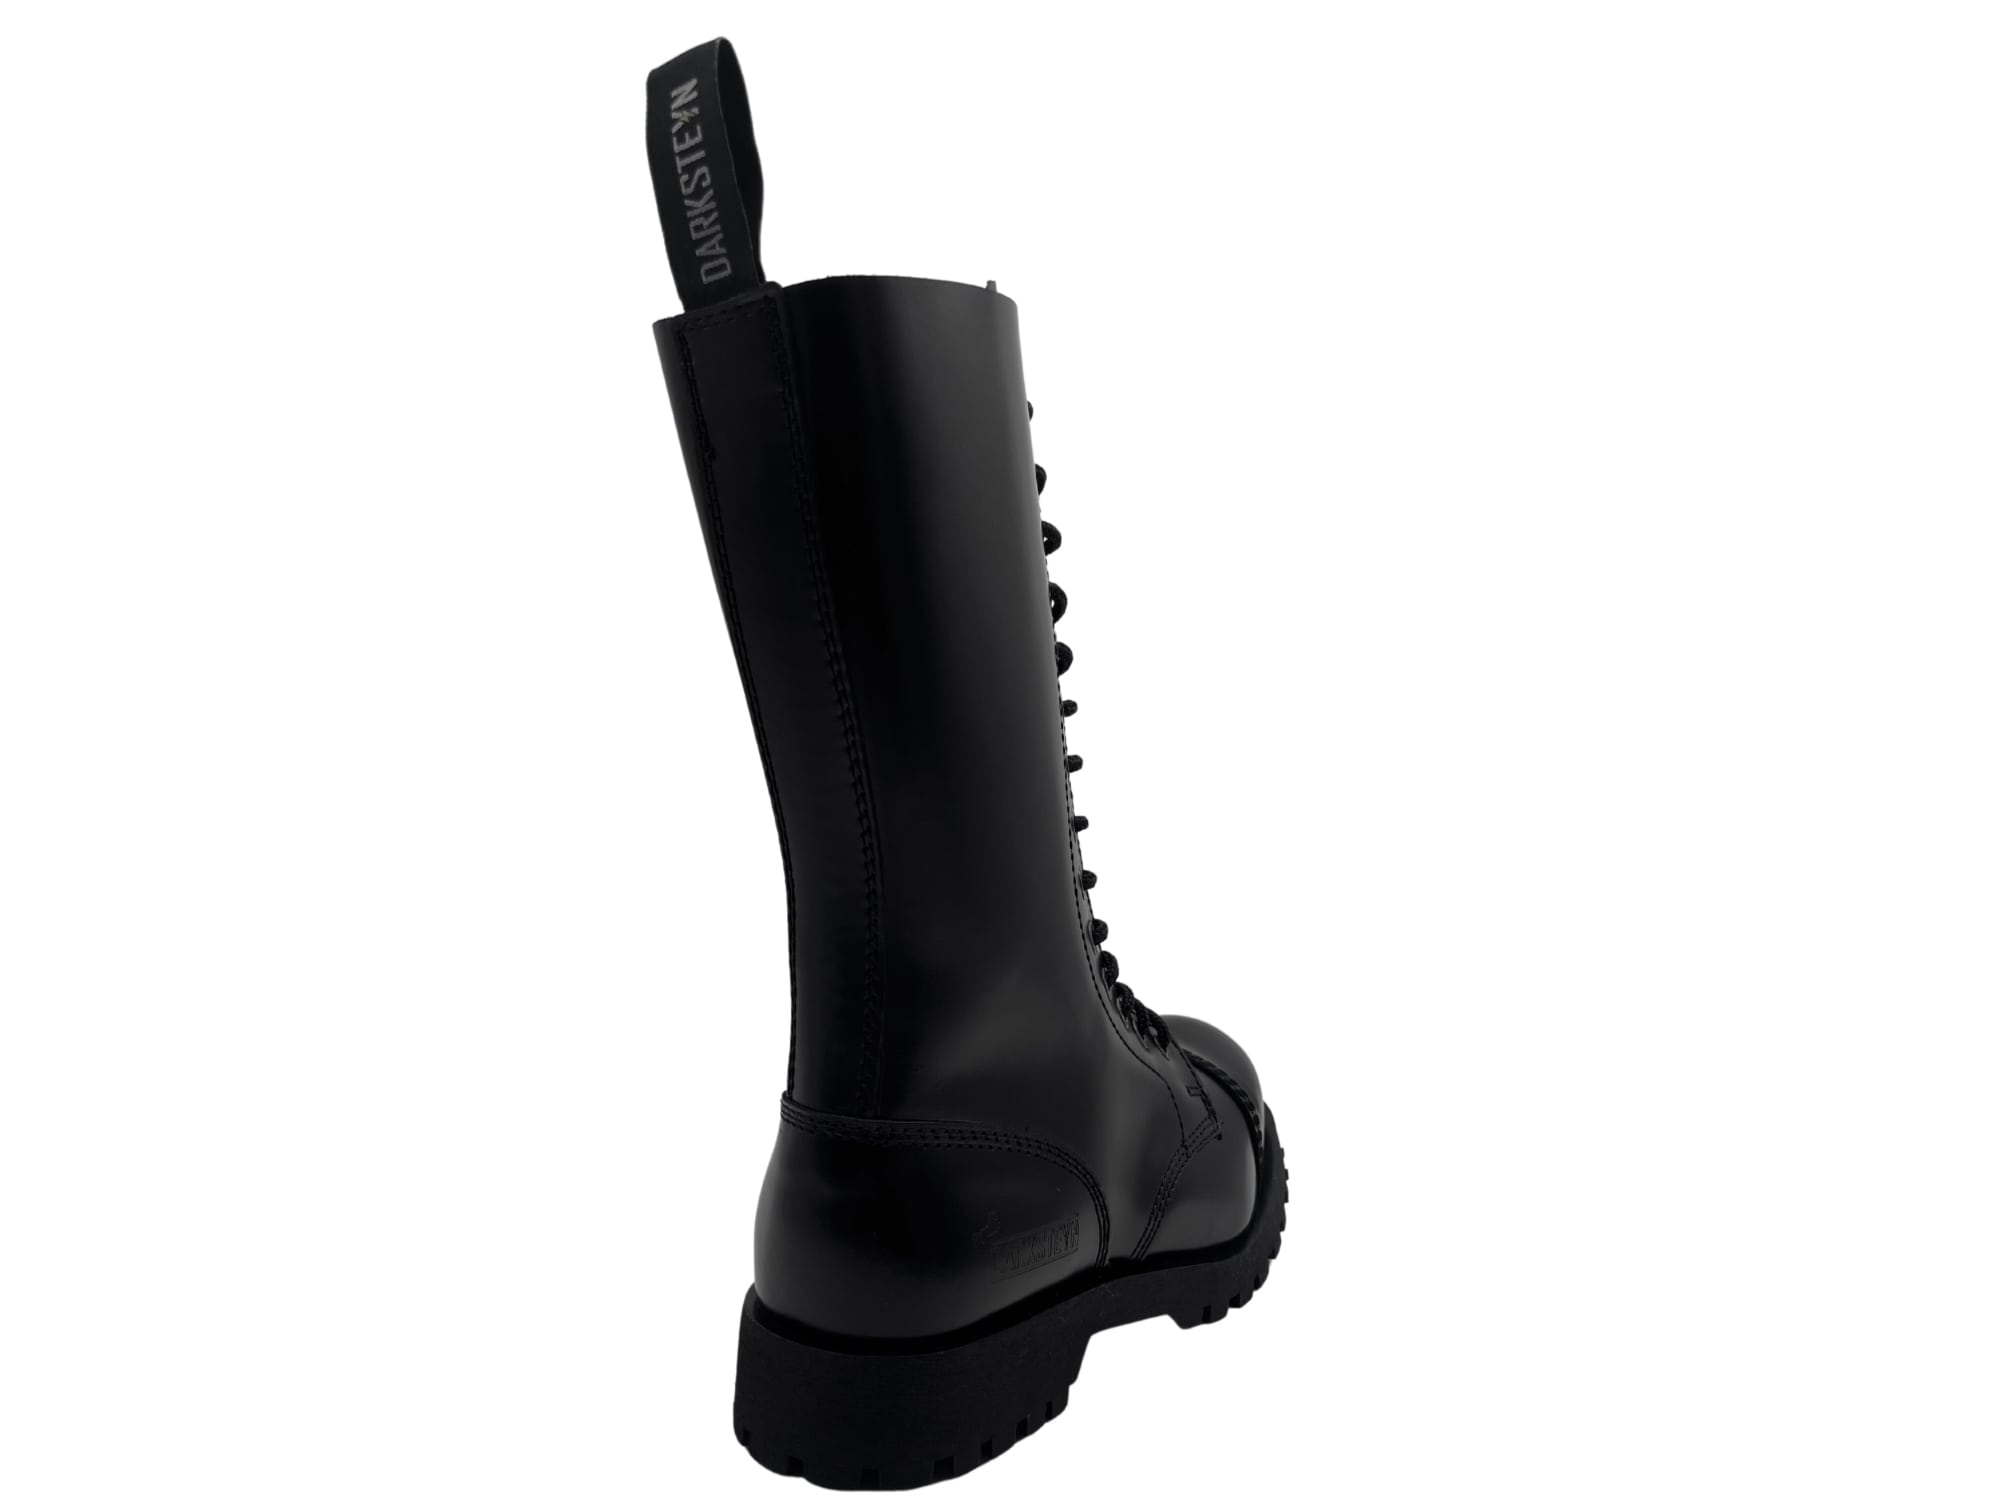 Darksteyn Schuhe 14 Eye Ranger Premium Boots Black Springerstiefel